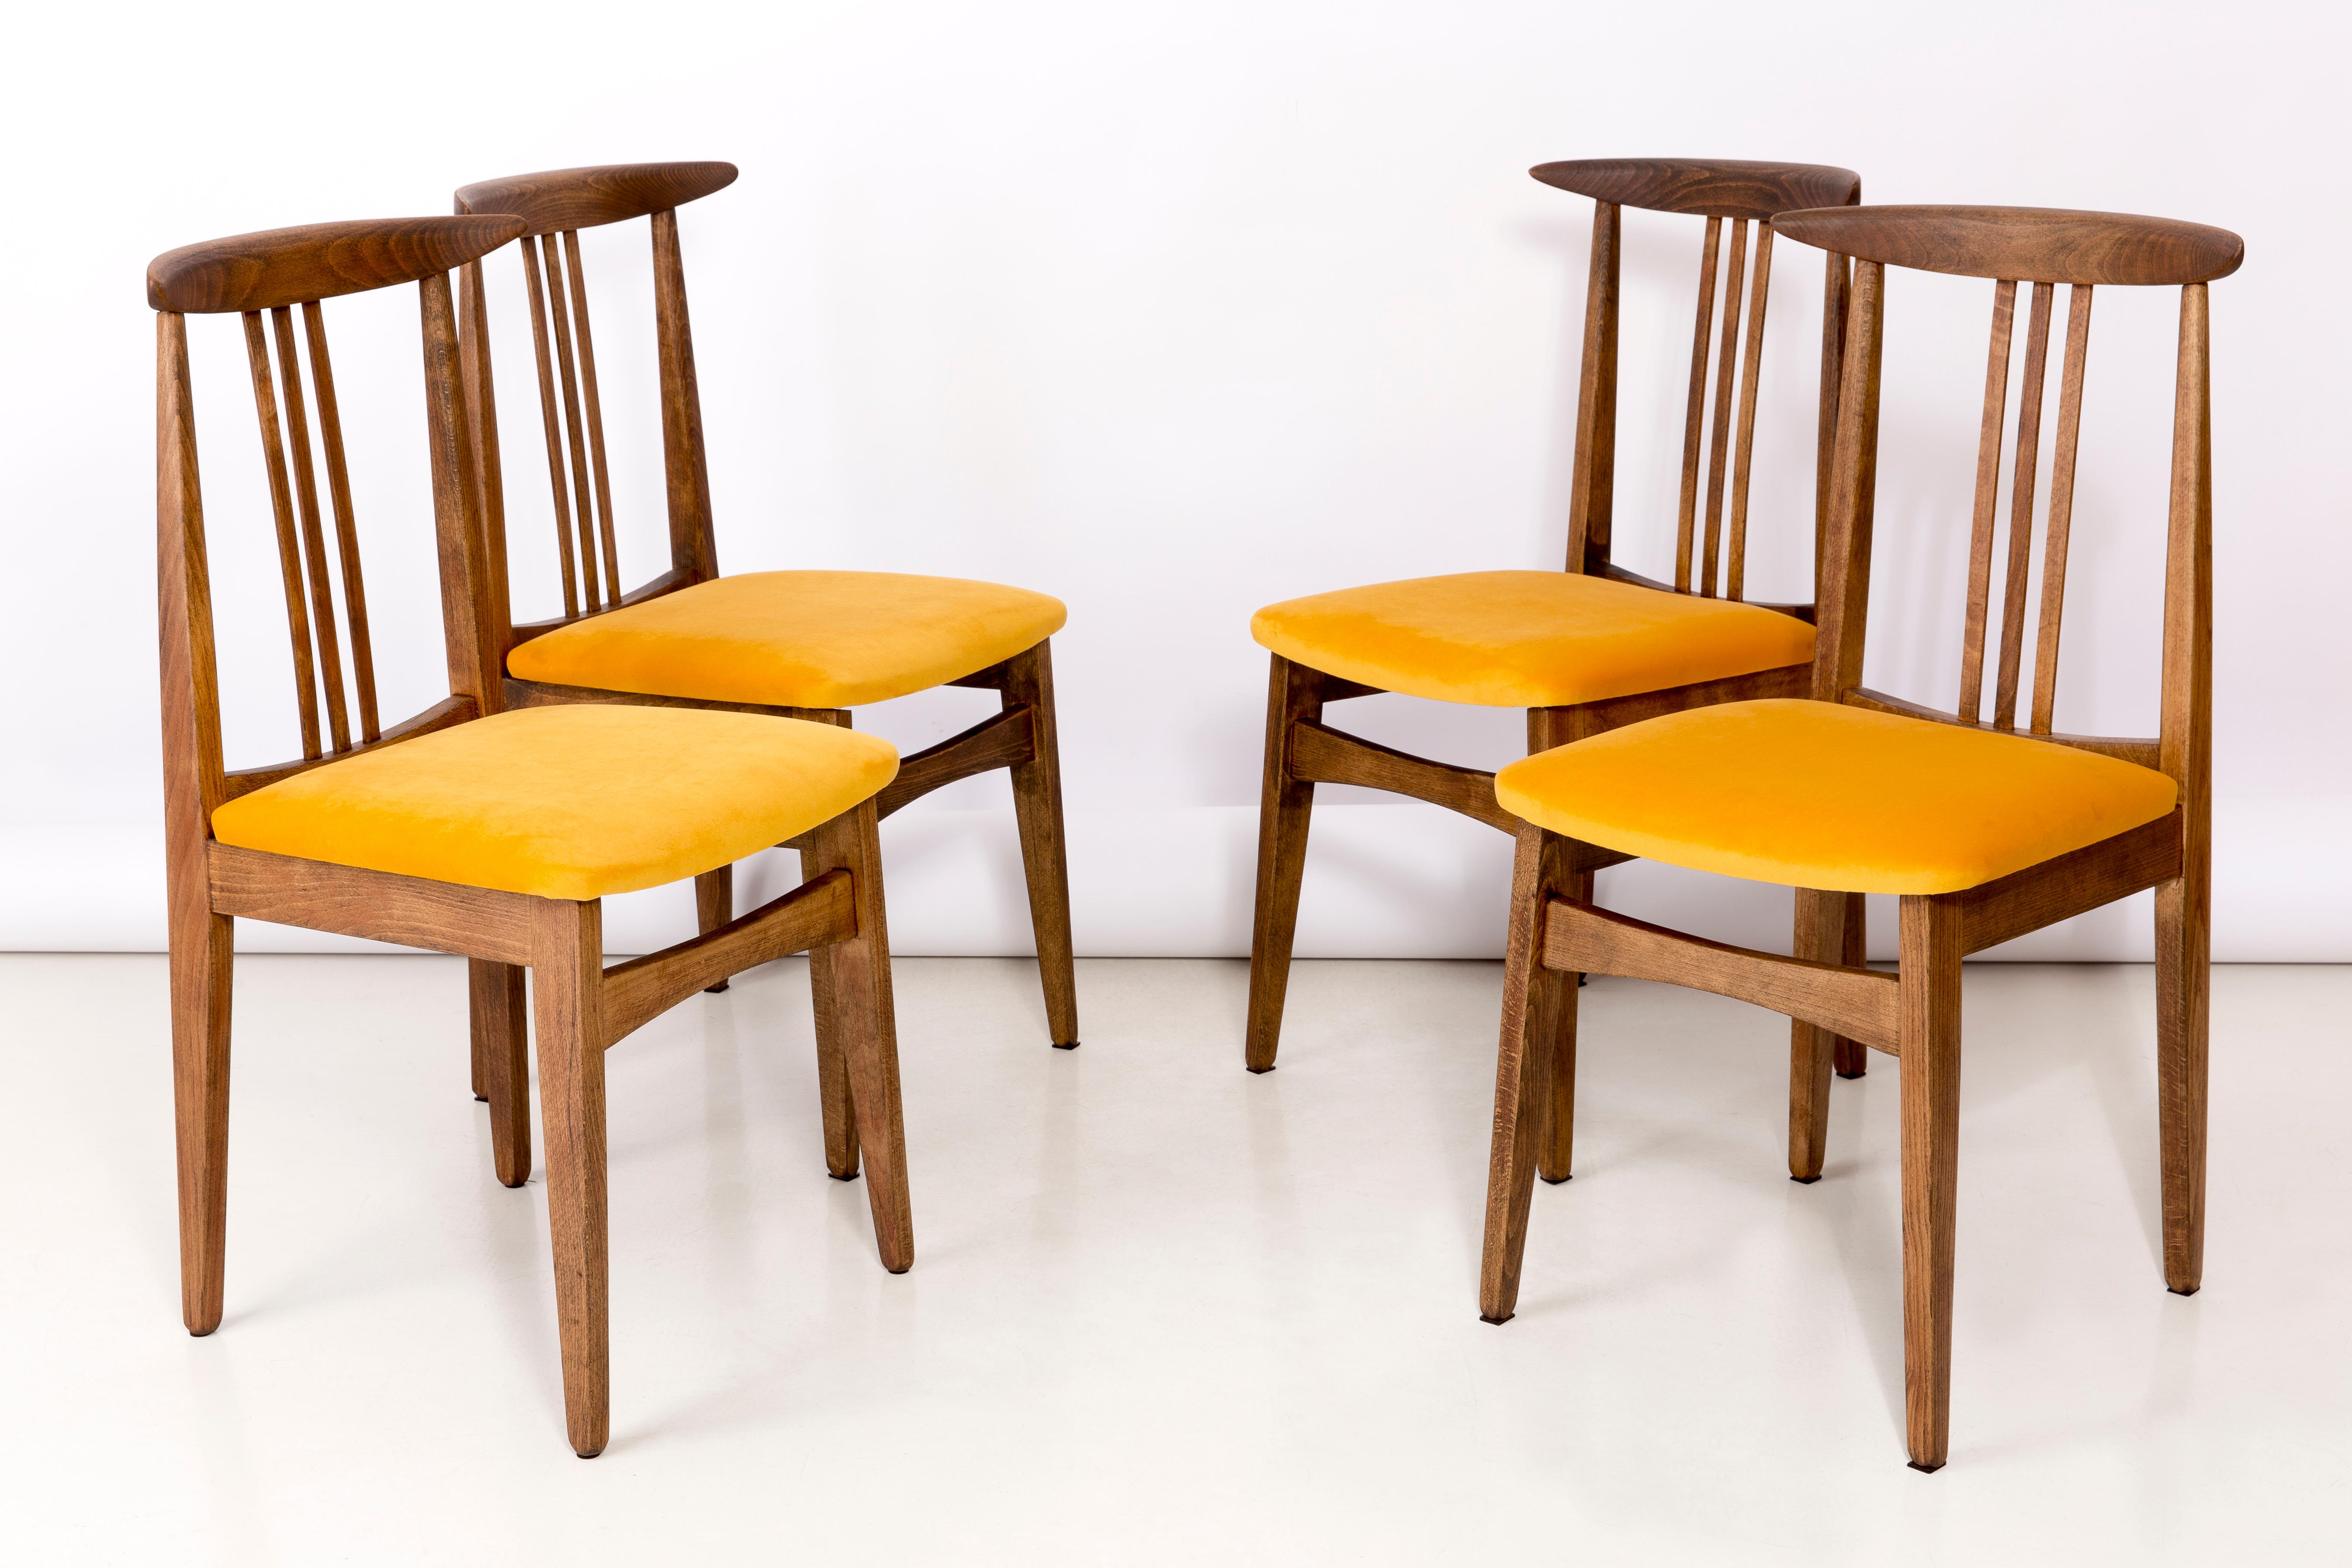 Satz von vier Buchenholzstühlen, entworfen von M. Zielinski, Typ 200 / 100B. Hergestellt vom Opole Furniture Industry Center Ende der 1960er Jahre in Polen. Die Stühle wurden komplett neu geschreinert und gepolstert. Die Sitze sind mit hochwertigem